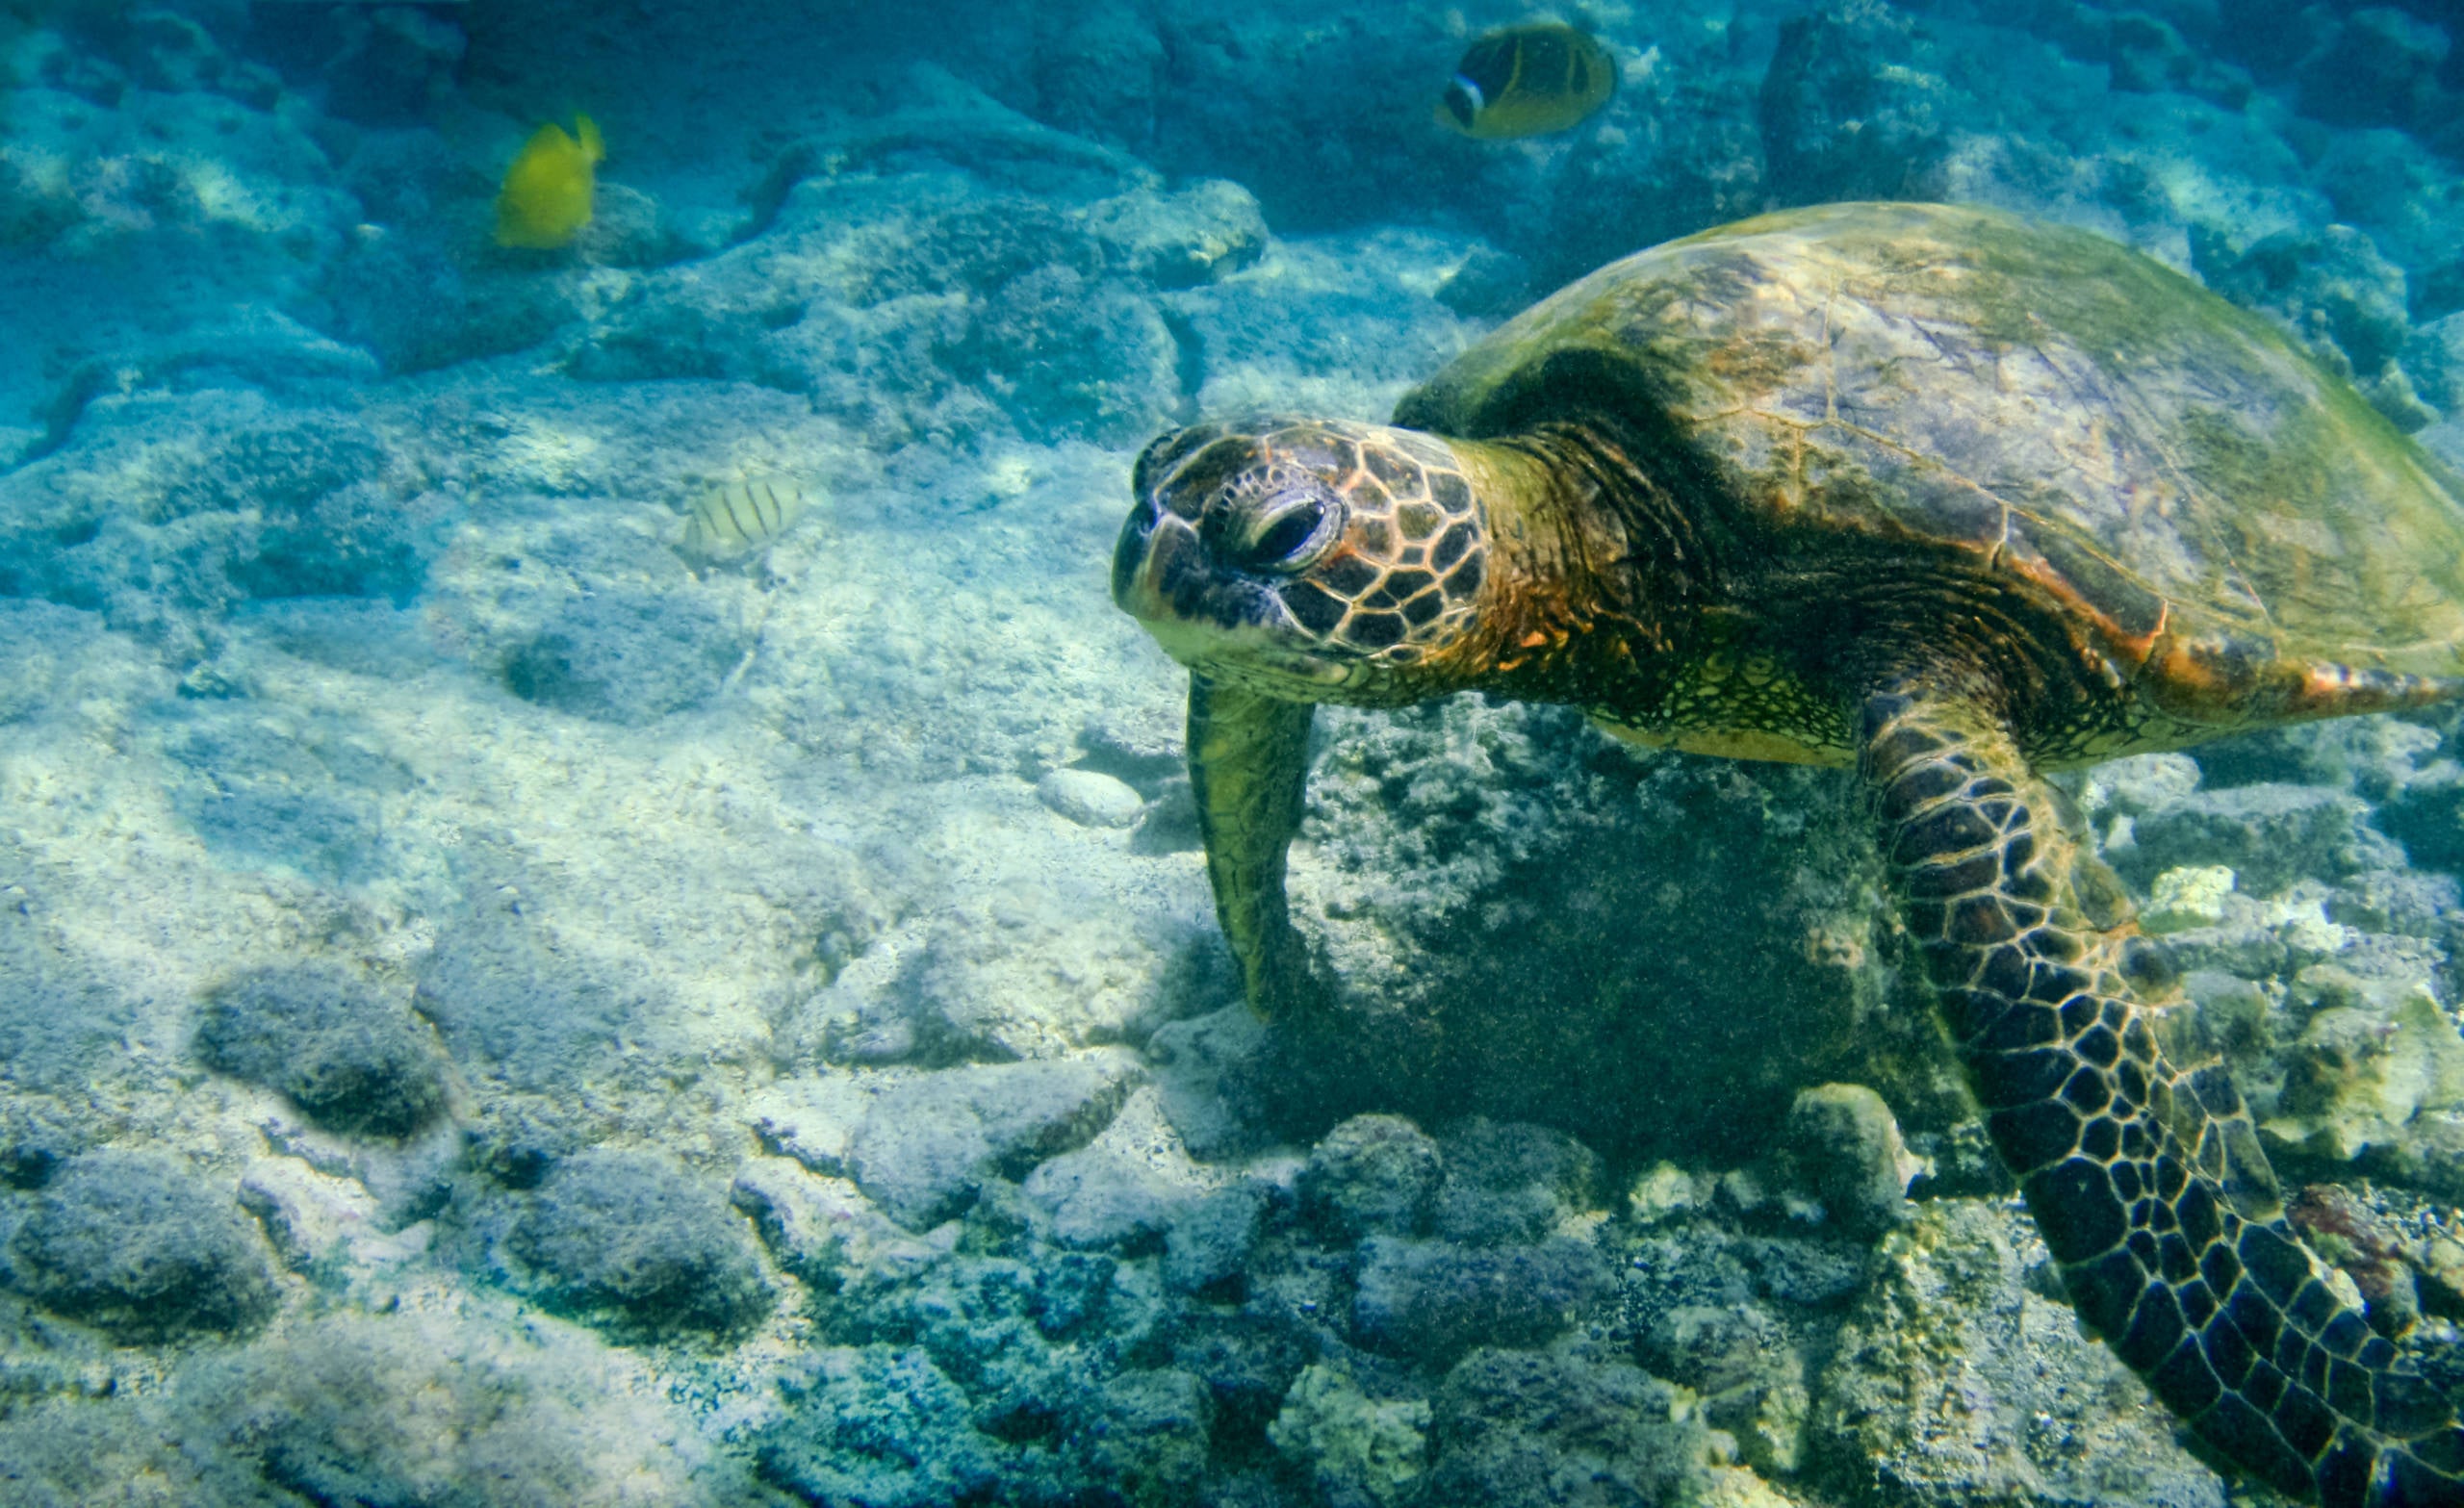 tartarugas marinhas verdes são uma visão comum no Richardson Beach Park. (crédito da foto: neicebird)